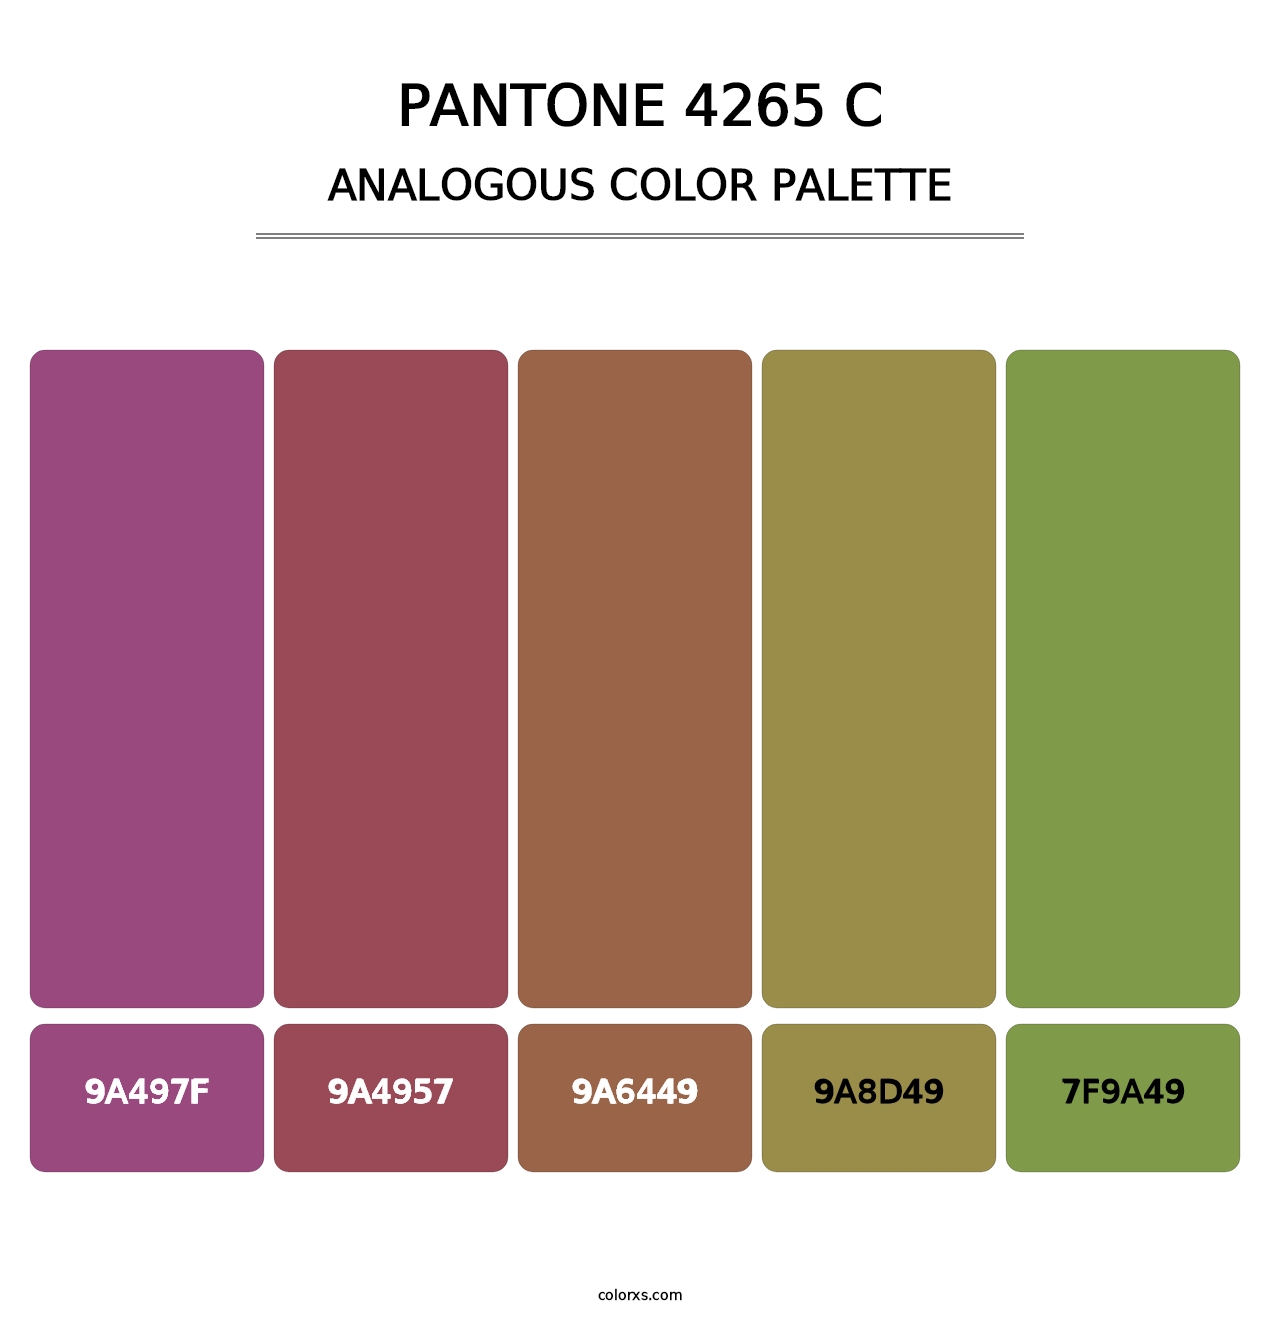 PANTONE 4265 C - Analogous Color Palette